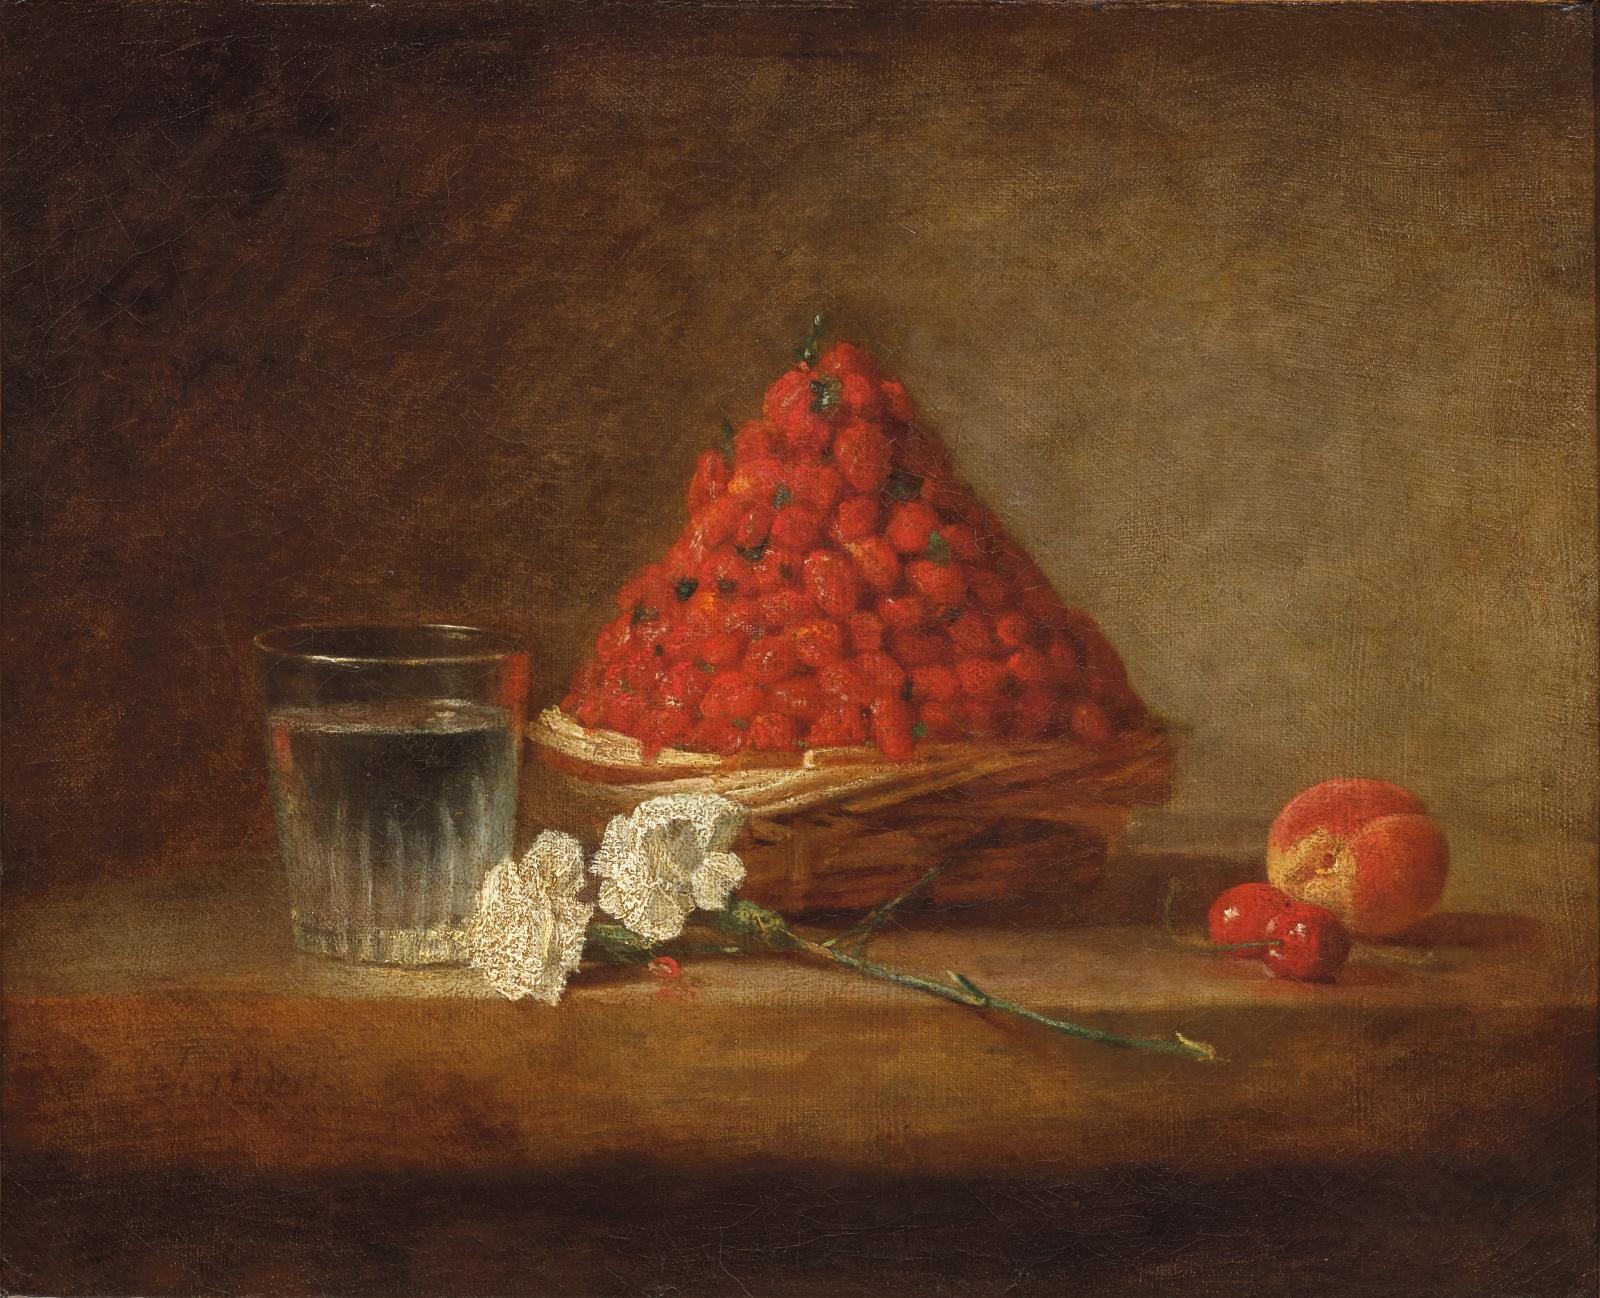 Avec le panier de fraises de Chardin, un peintre du XVIIIe siècle déjà impressionniste